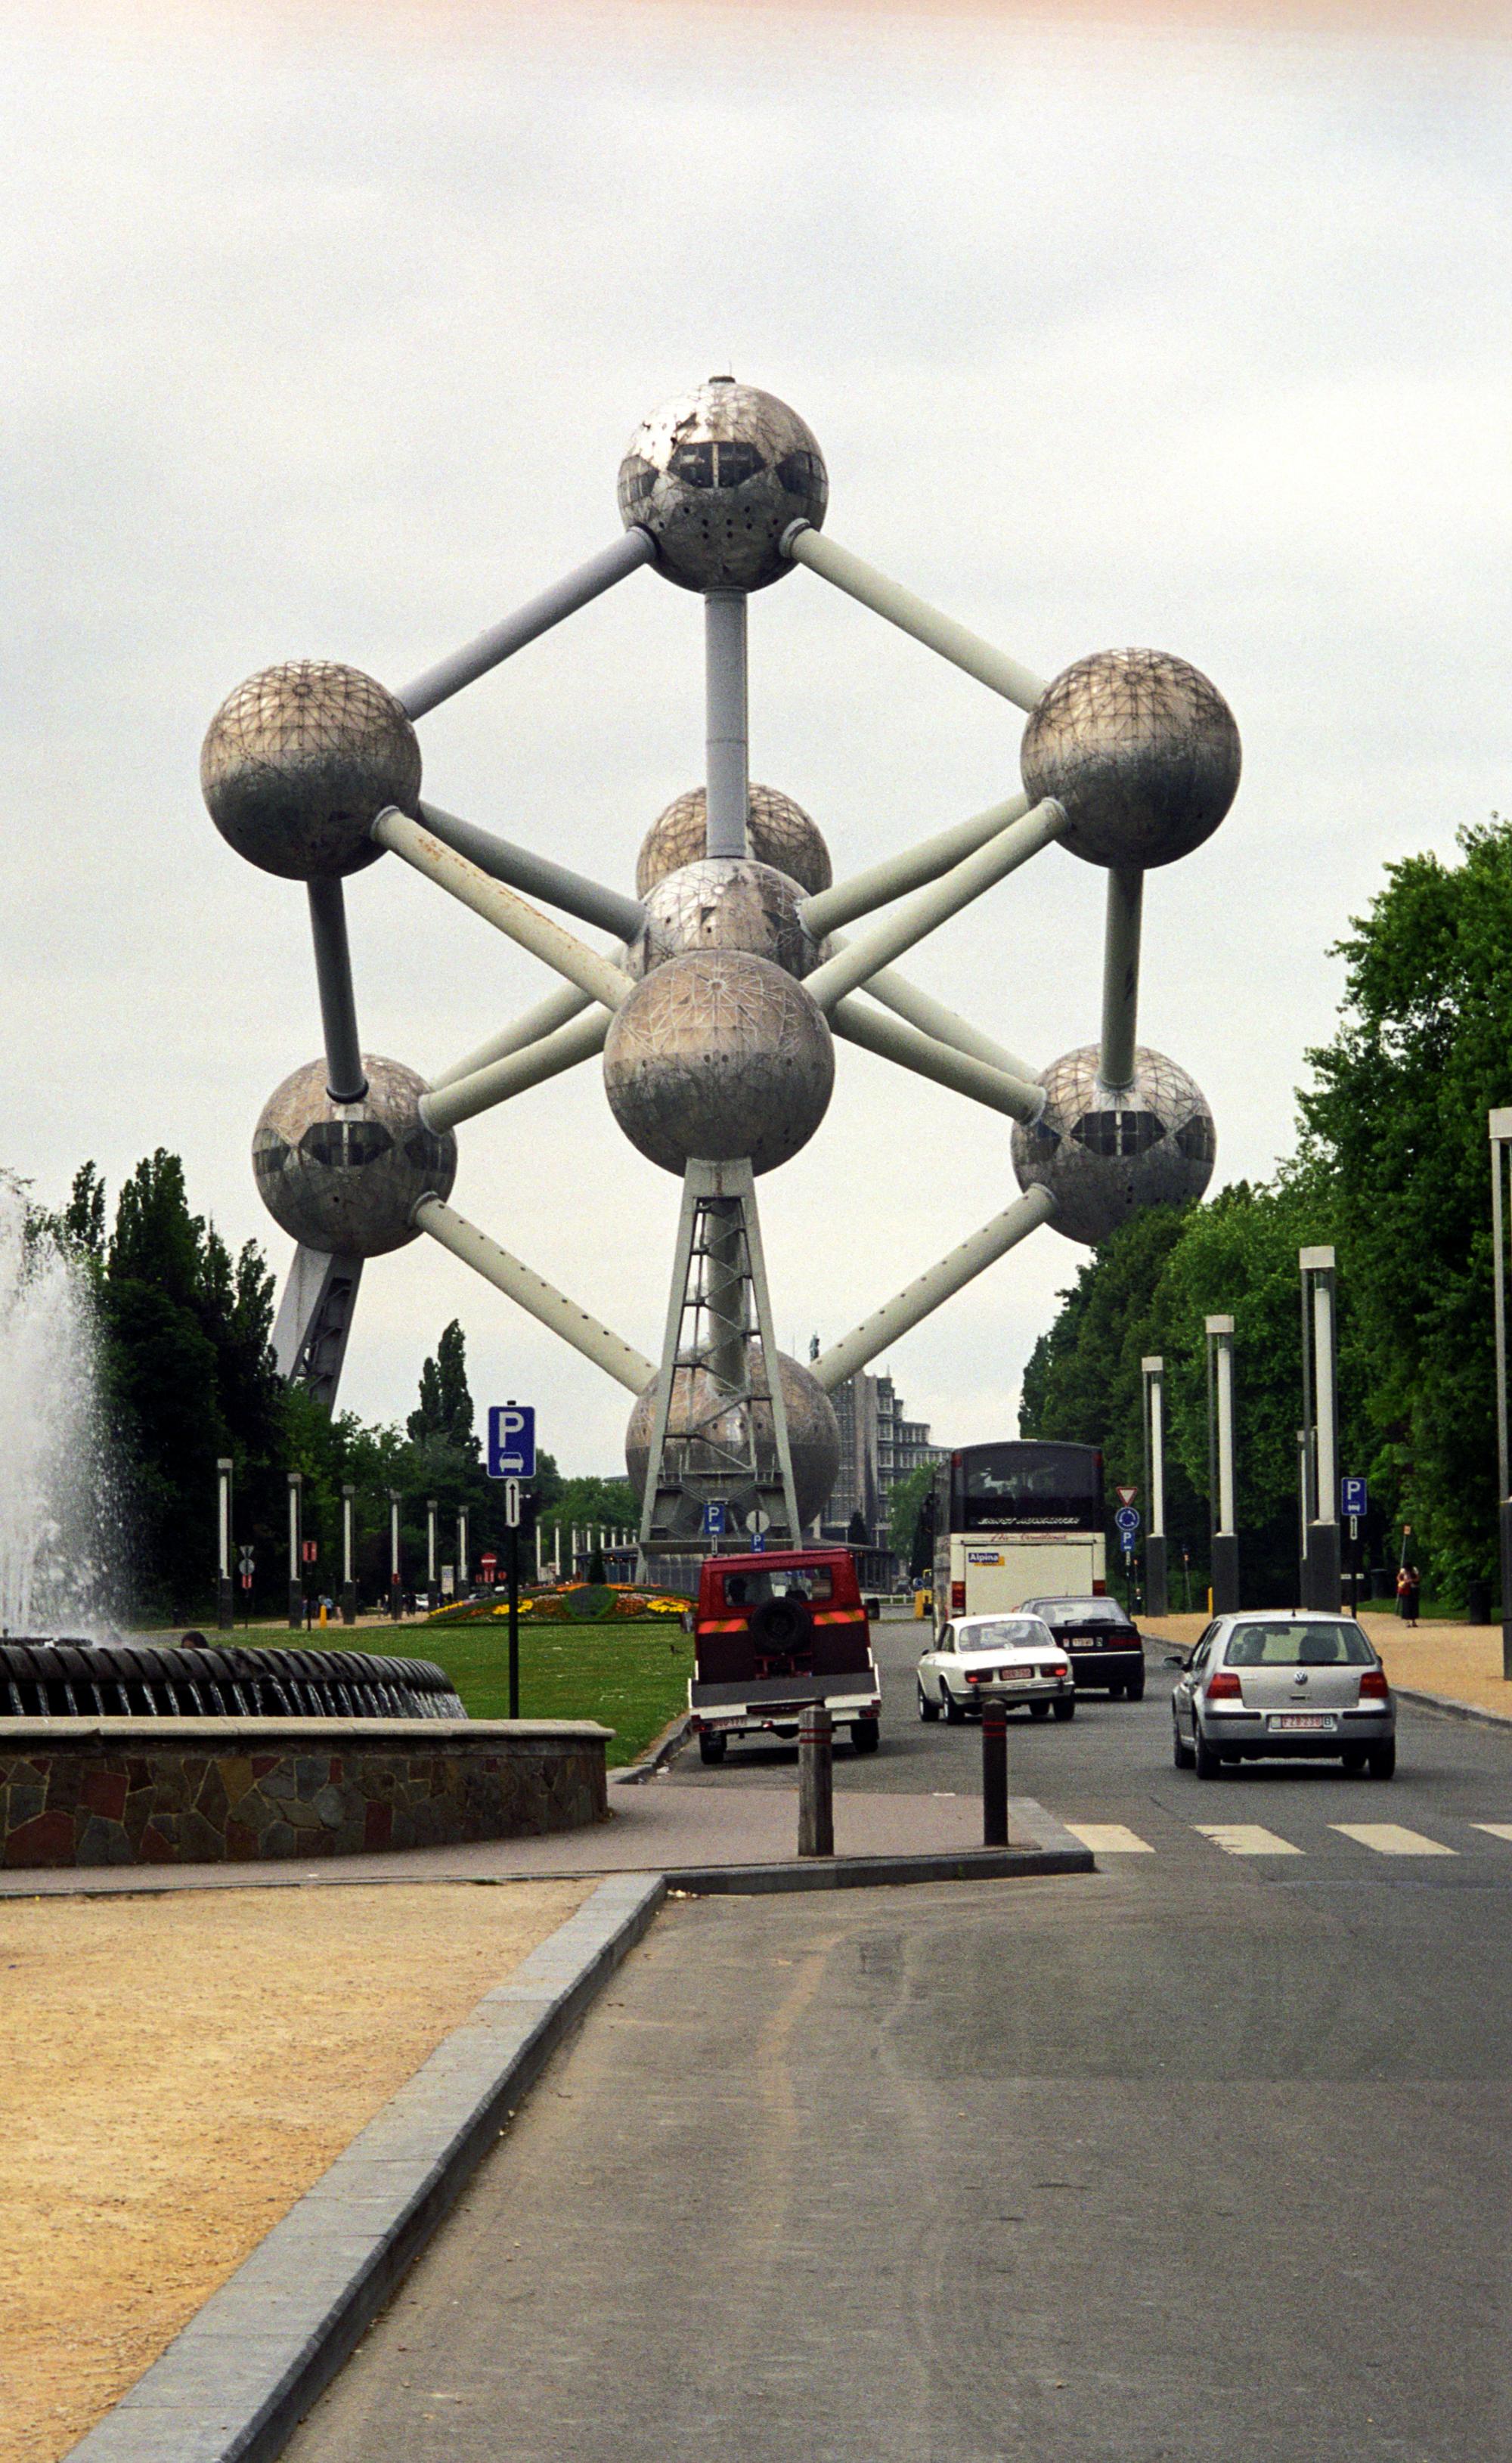 Brussels (2001-2007) - Atomium #1